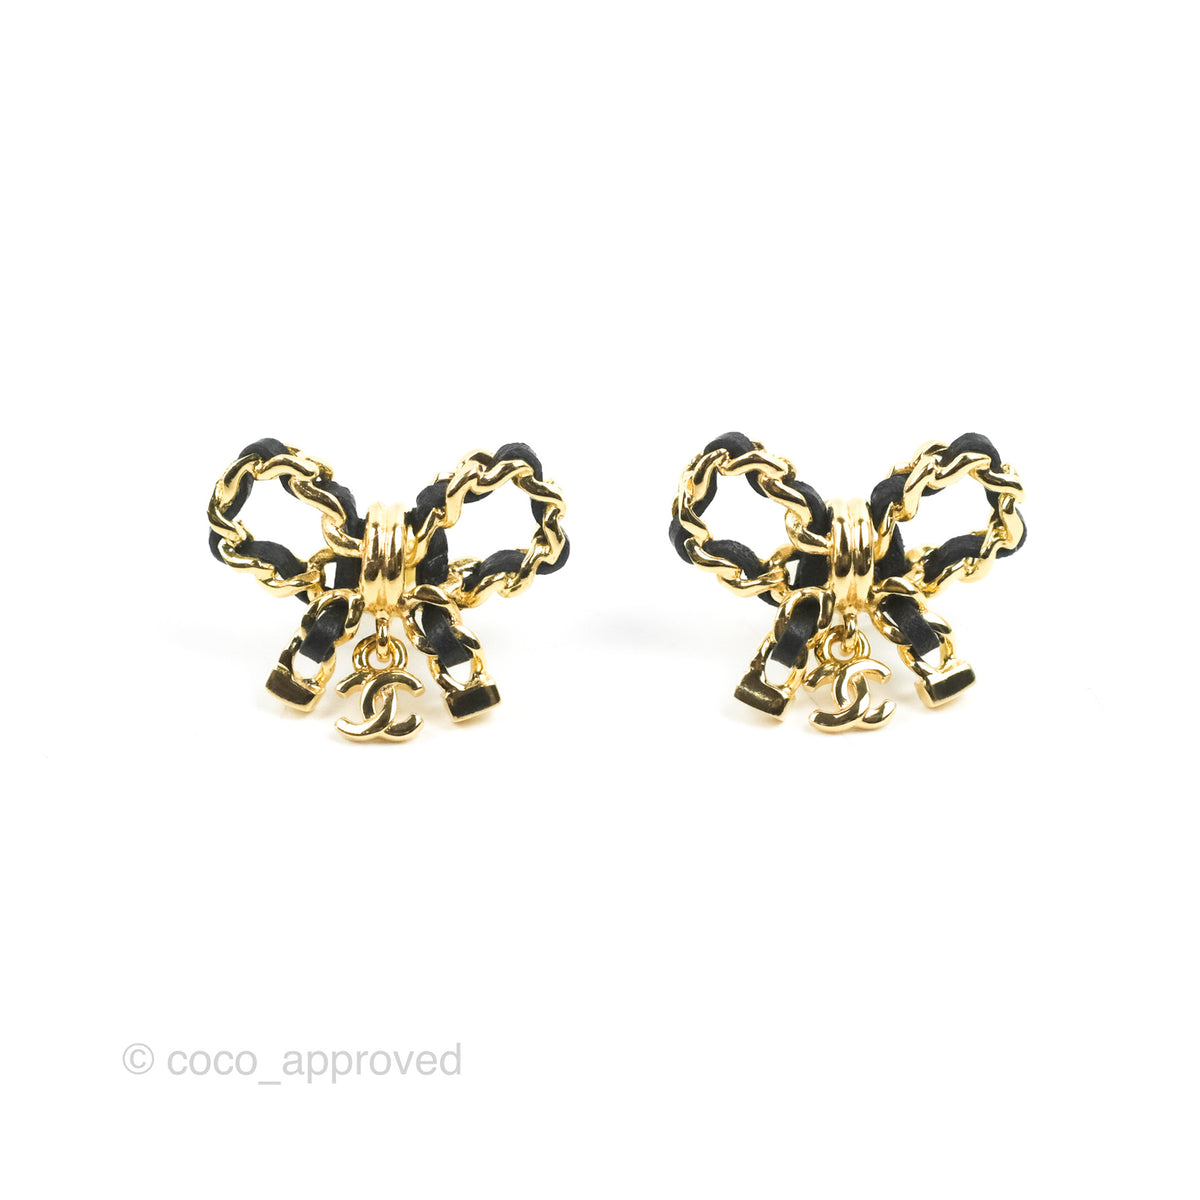 Chanel Lambskin Chain Bow Stud Earrings Black Gold 22A